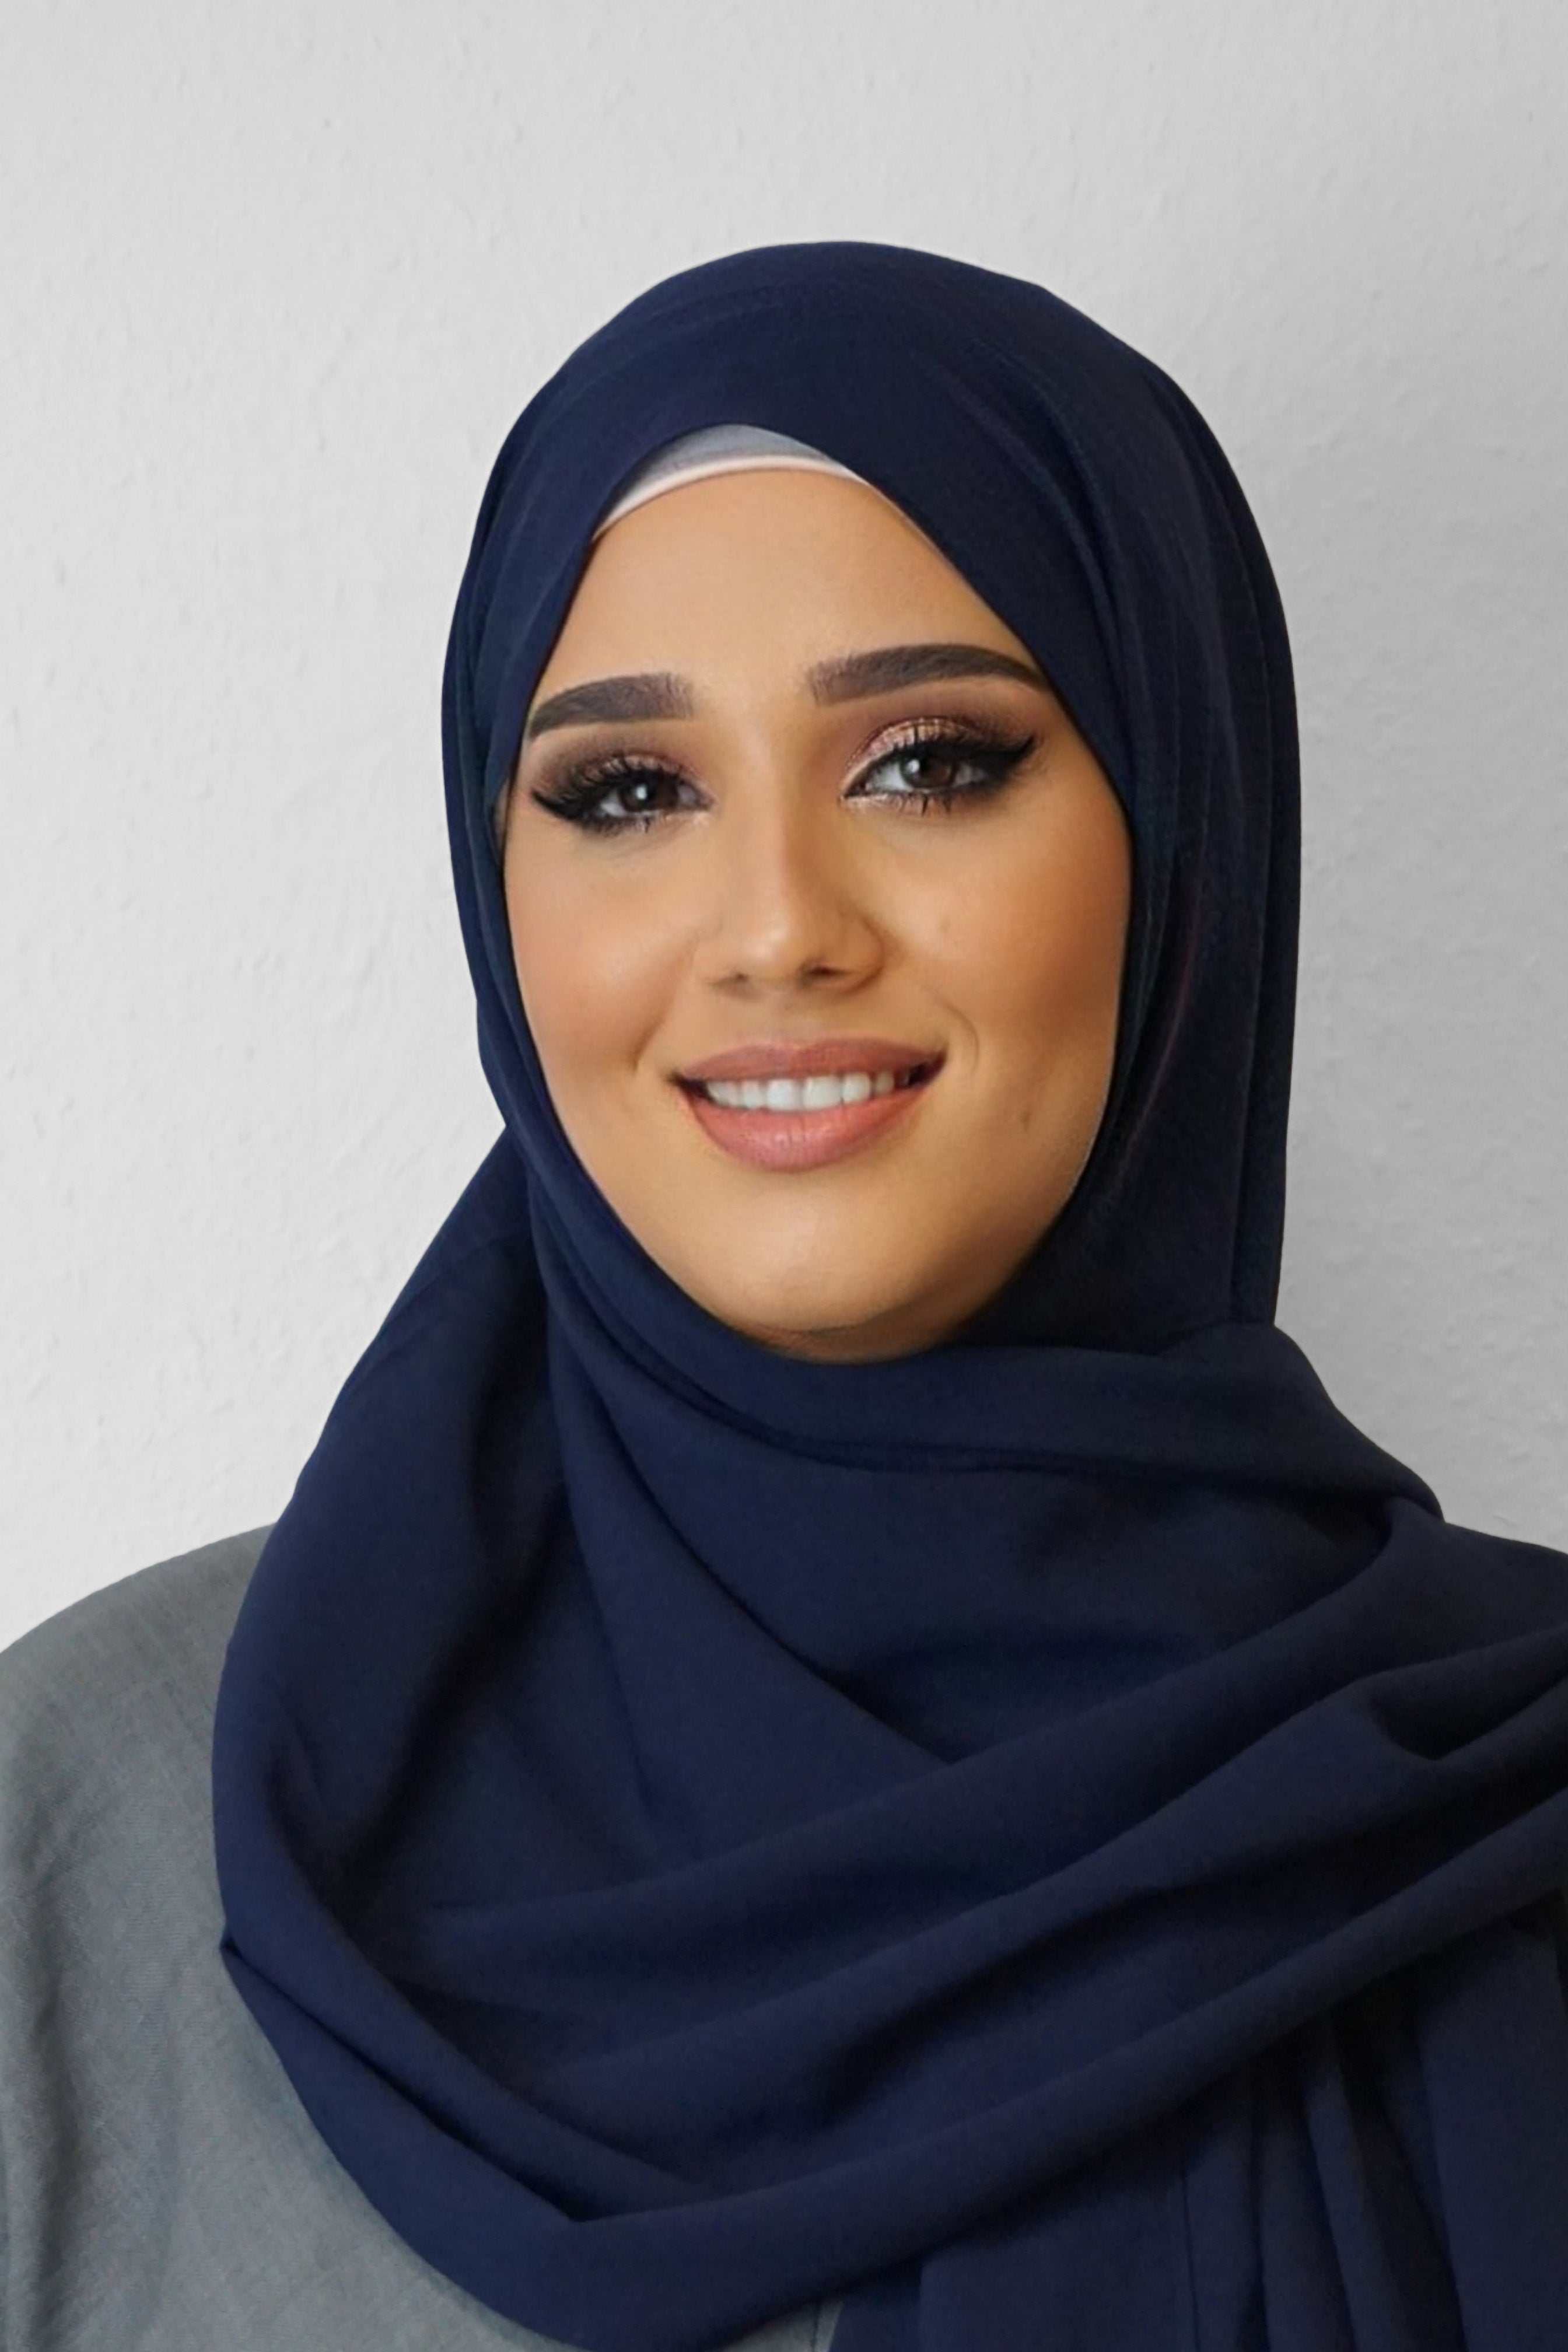 Crep Hijab Dunkelblau